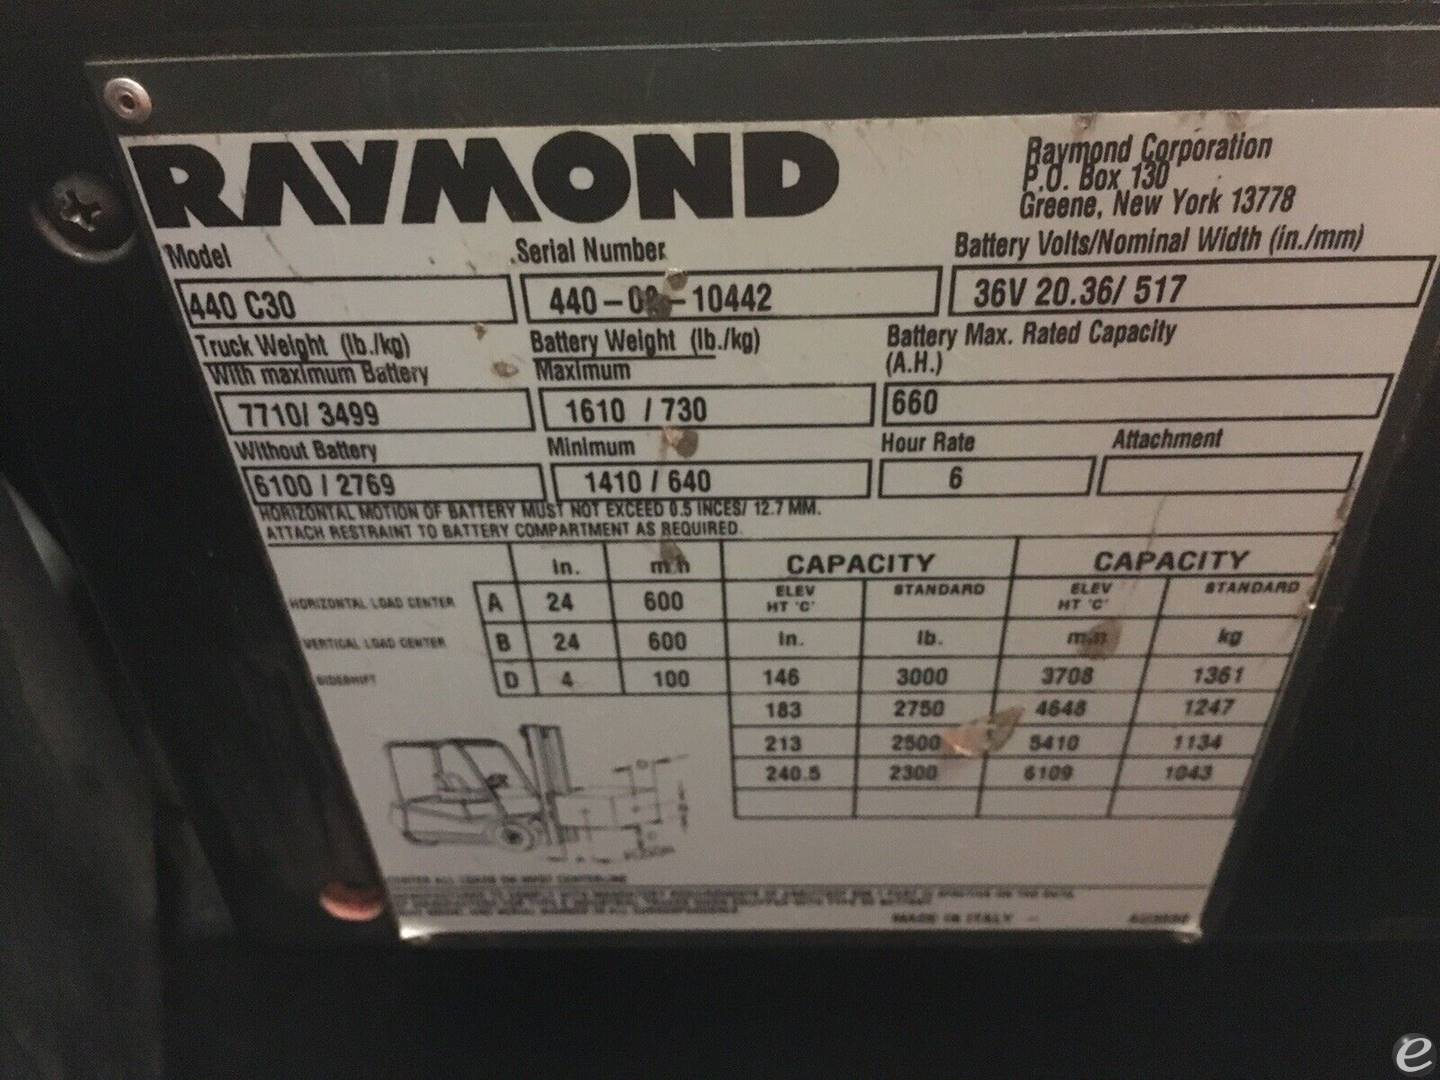 2002 Raymond 440 C30